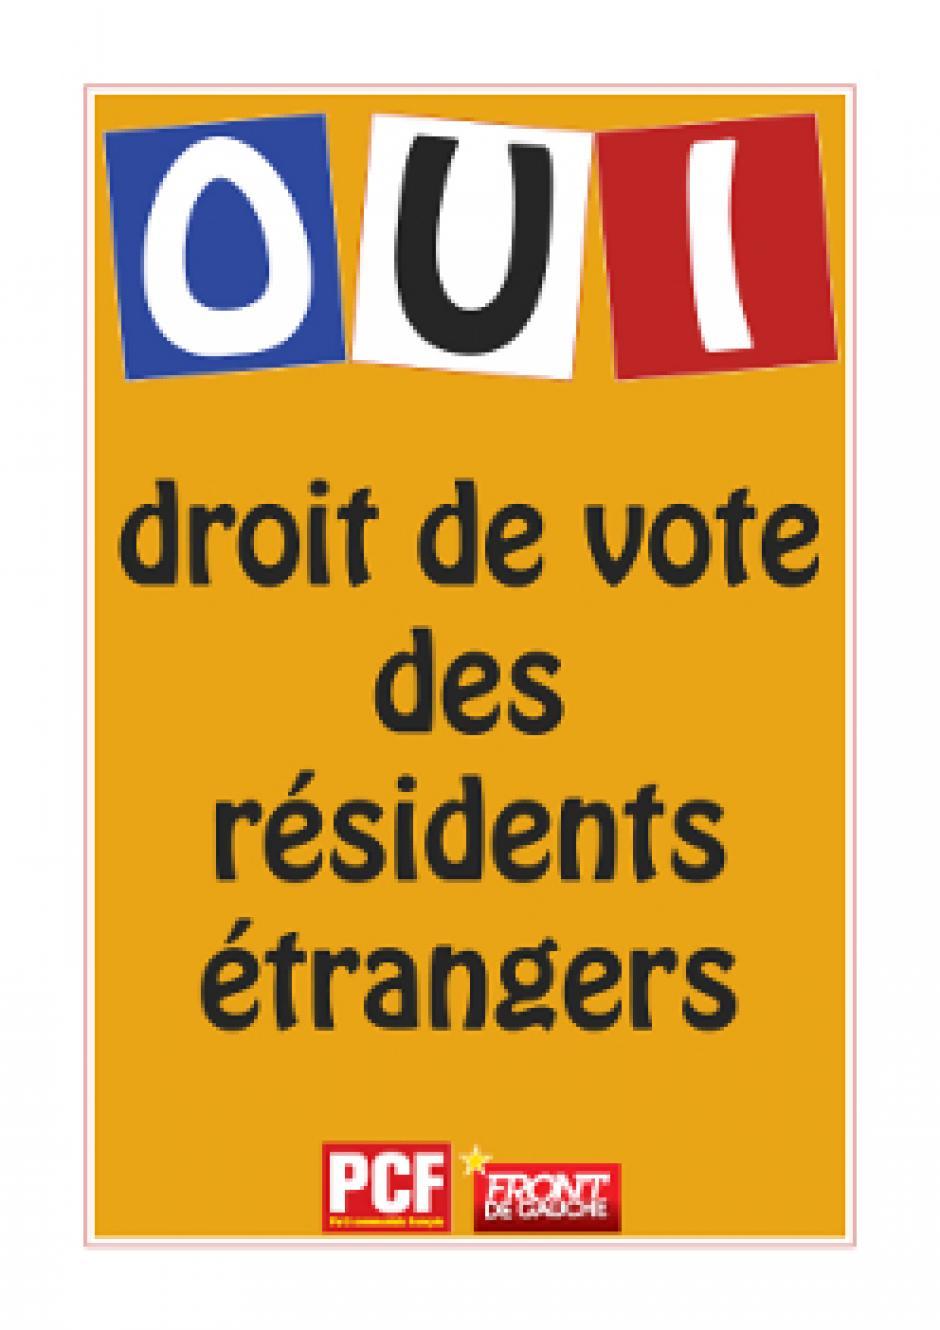 Le PCF Paris 14 s'engage pour le droit de vote des résidents étrangers